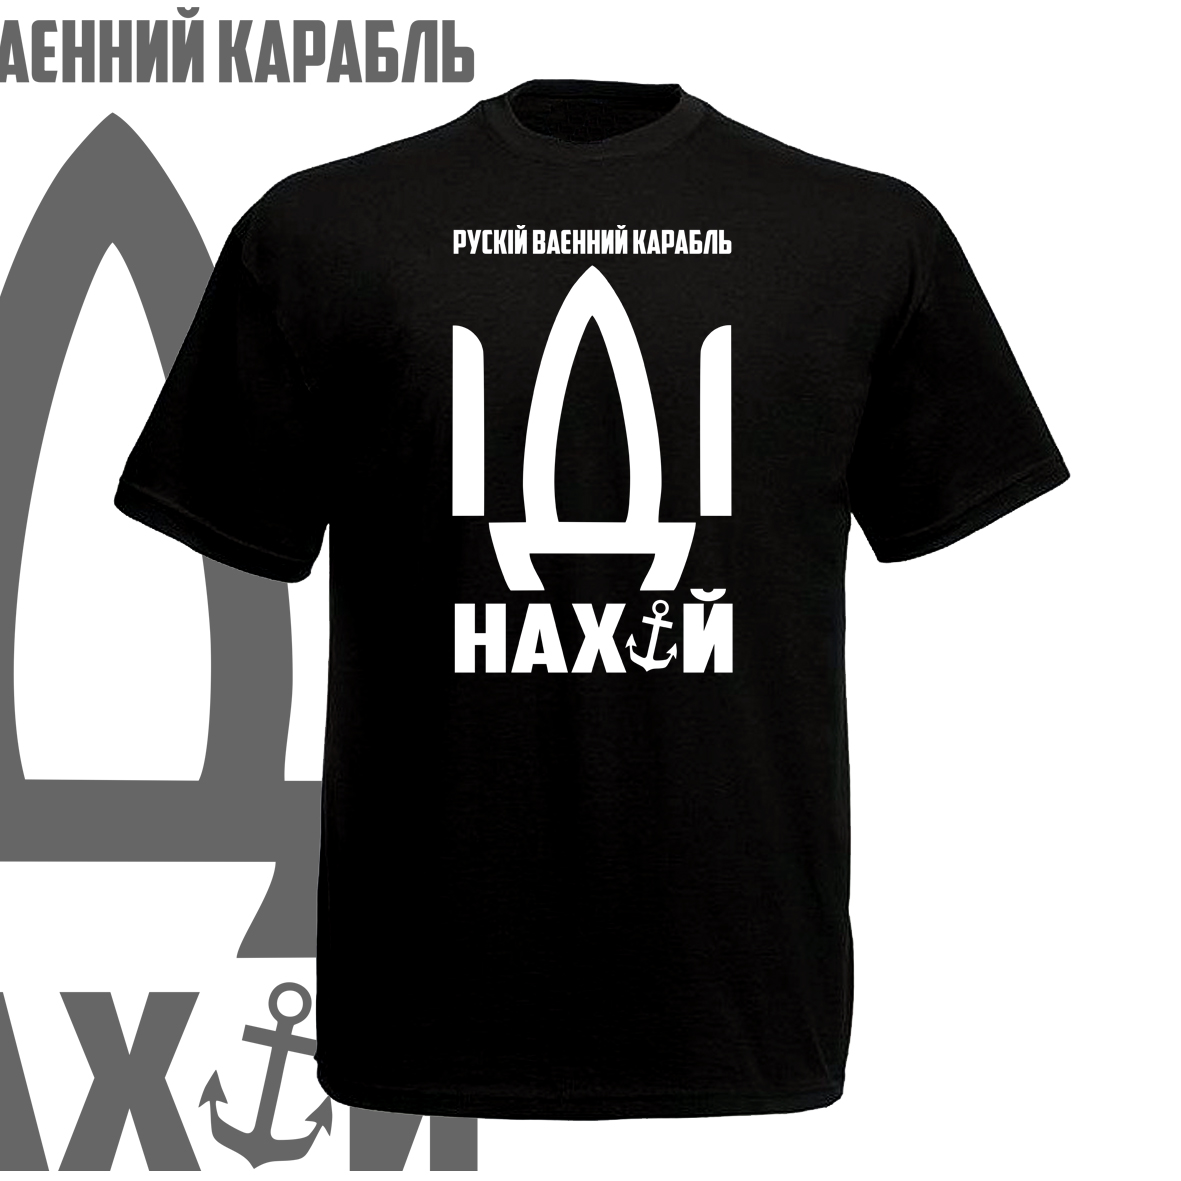 футболка русский военный корабли иди нахуй